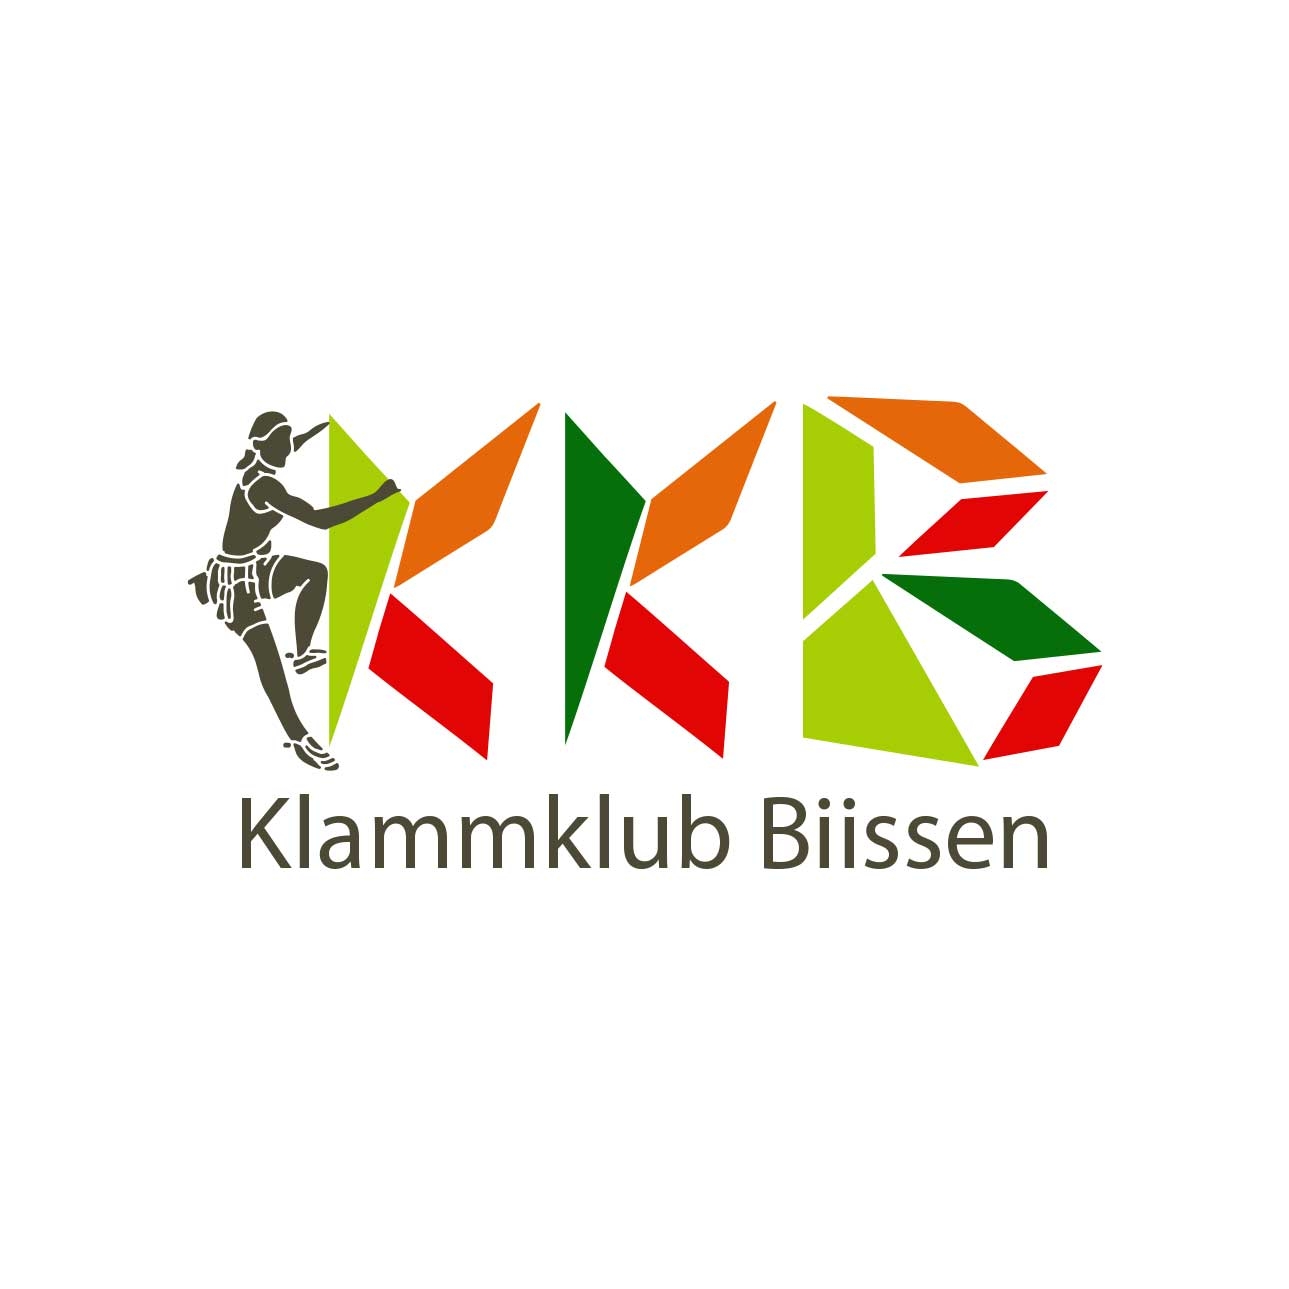  Bissen logo